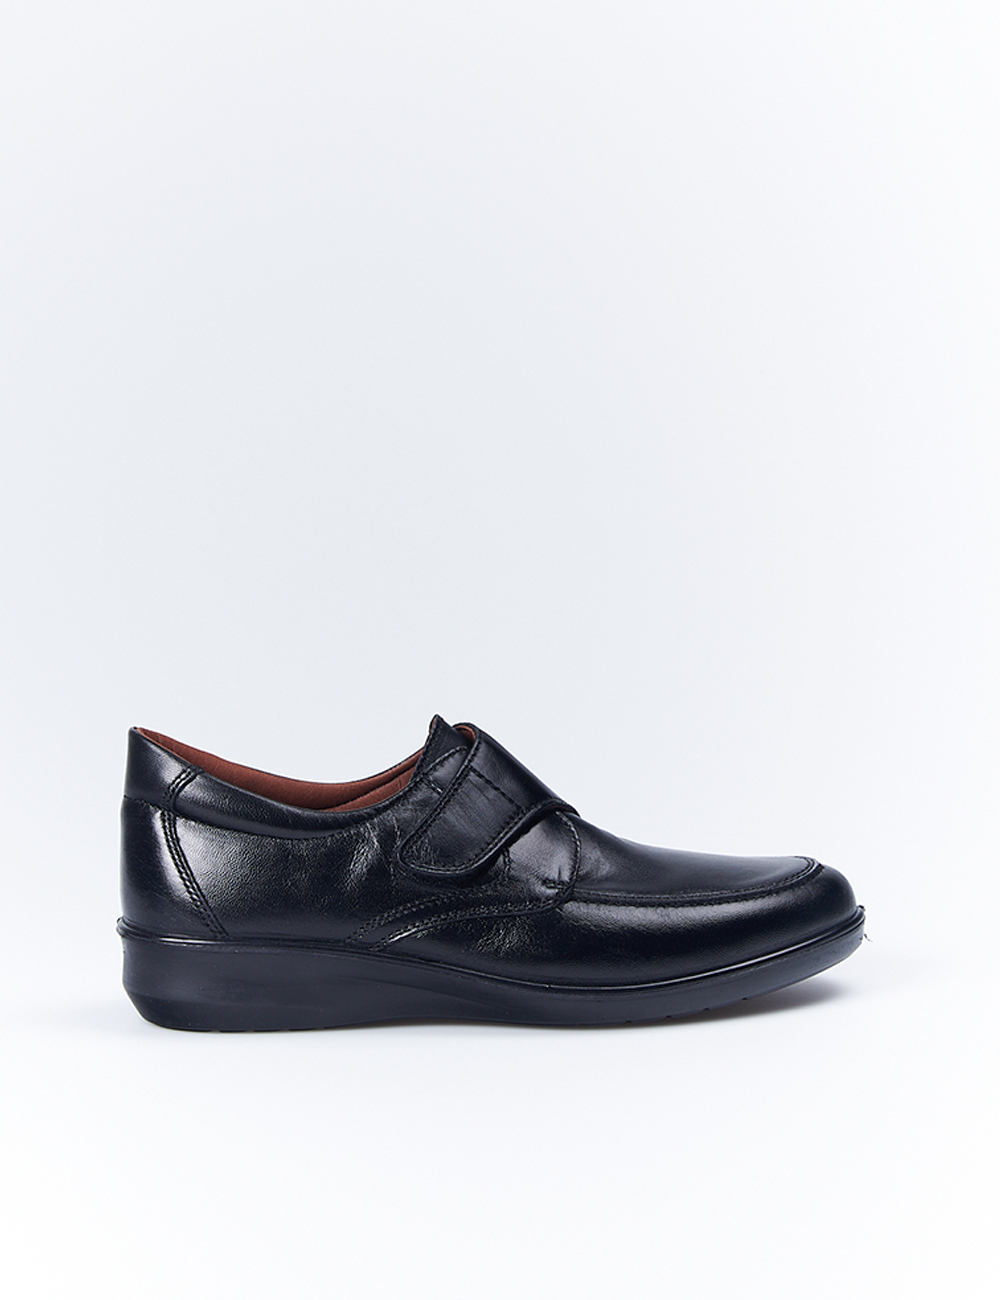 Zapatos Profesional Luisetti 0306 Negro